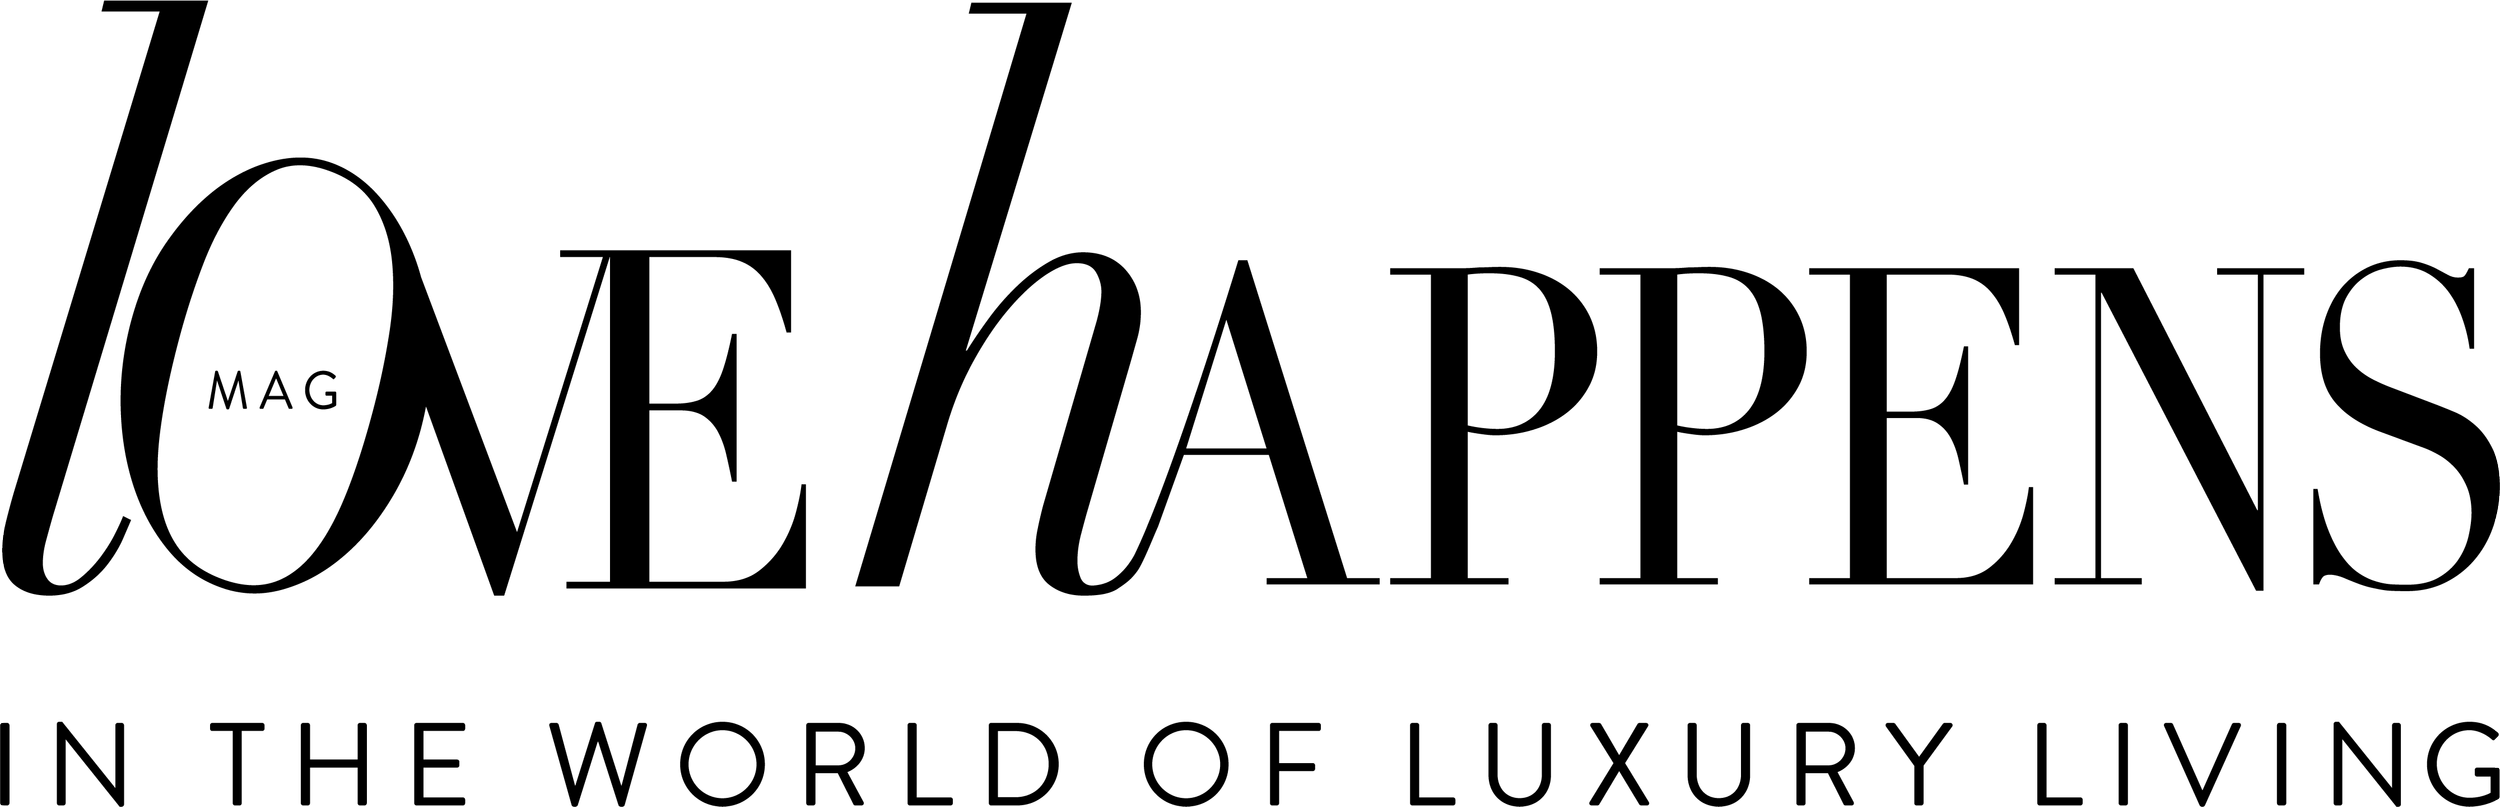 logo-lh-04-1.png